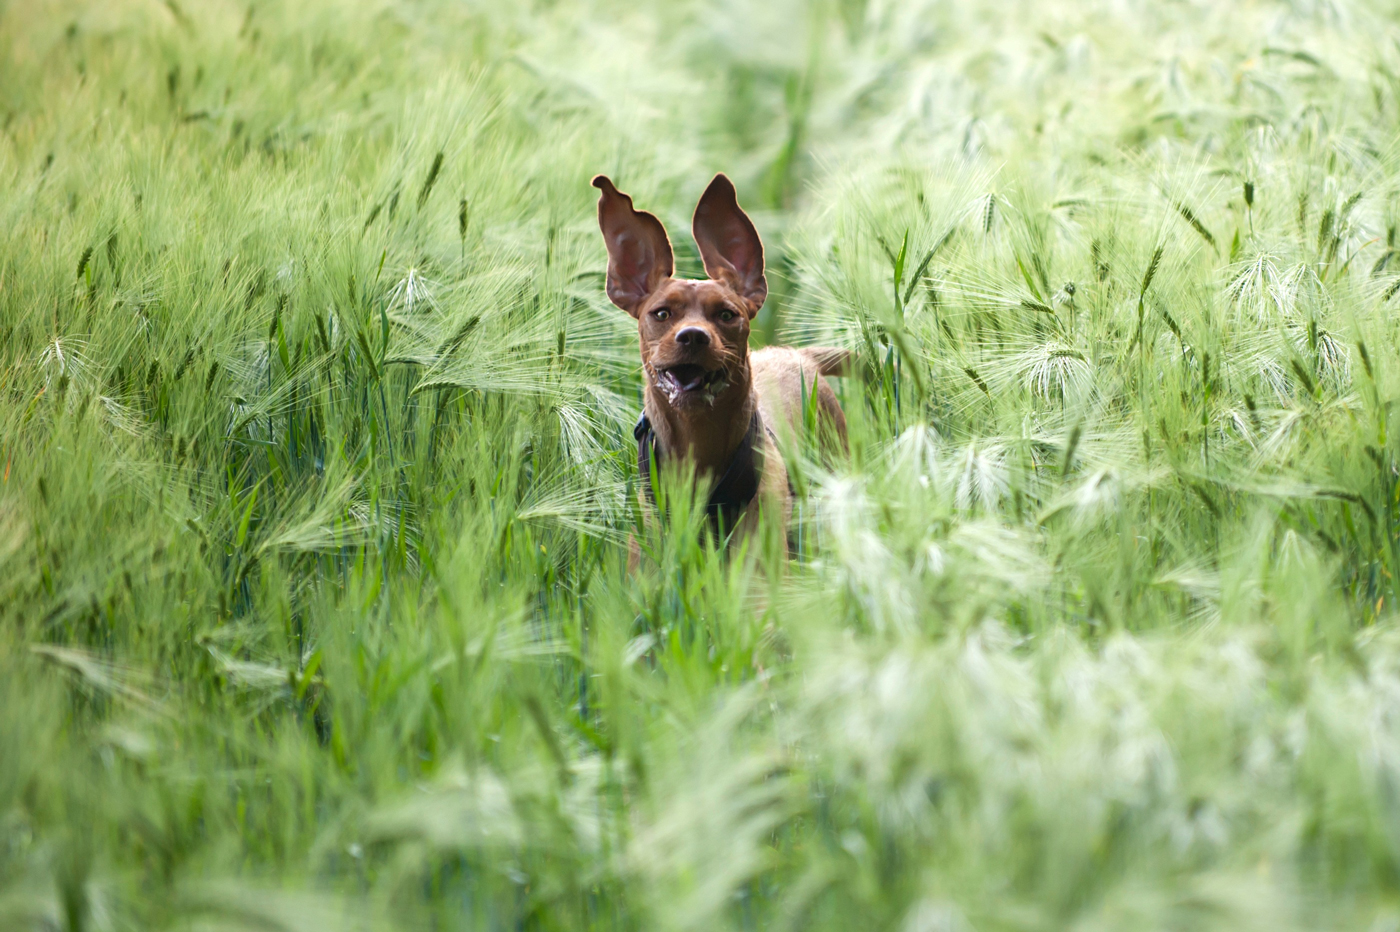 A dog running through a long grass field